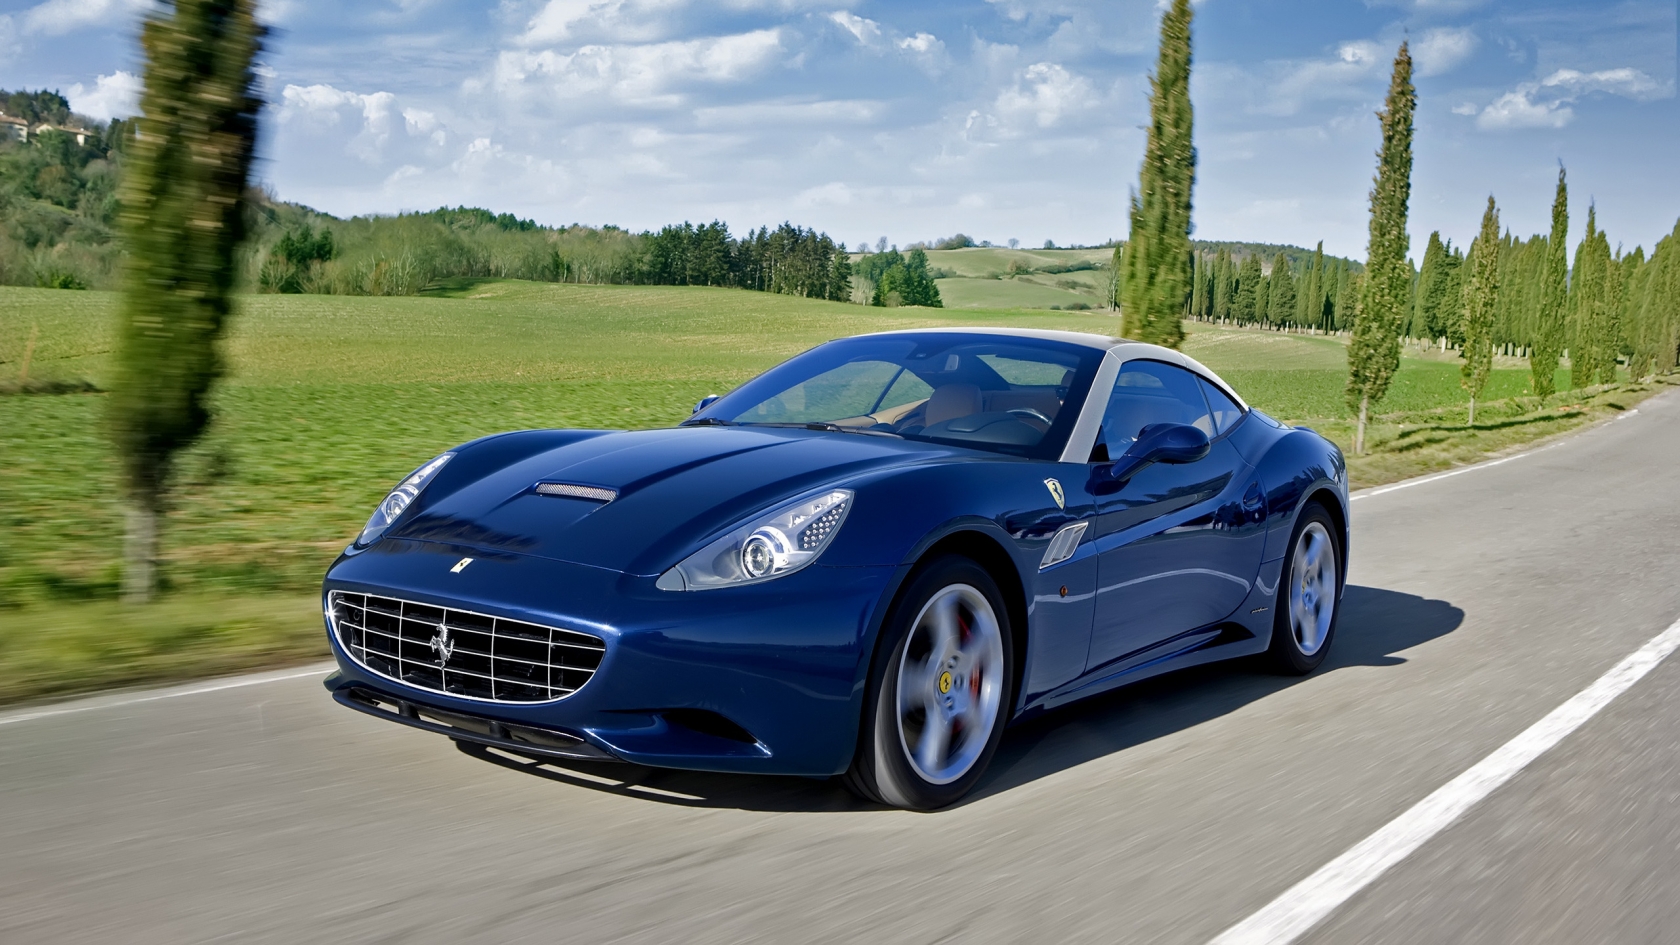 Blue Ferrari California for 1680 x 945 HDTV resolution